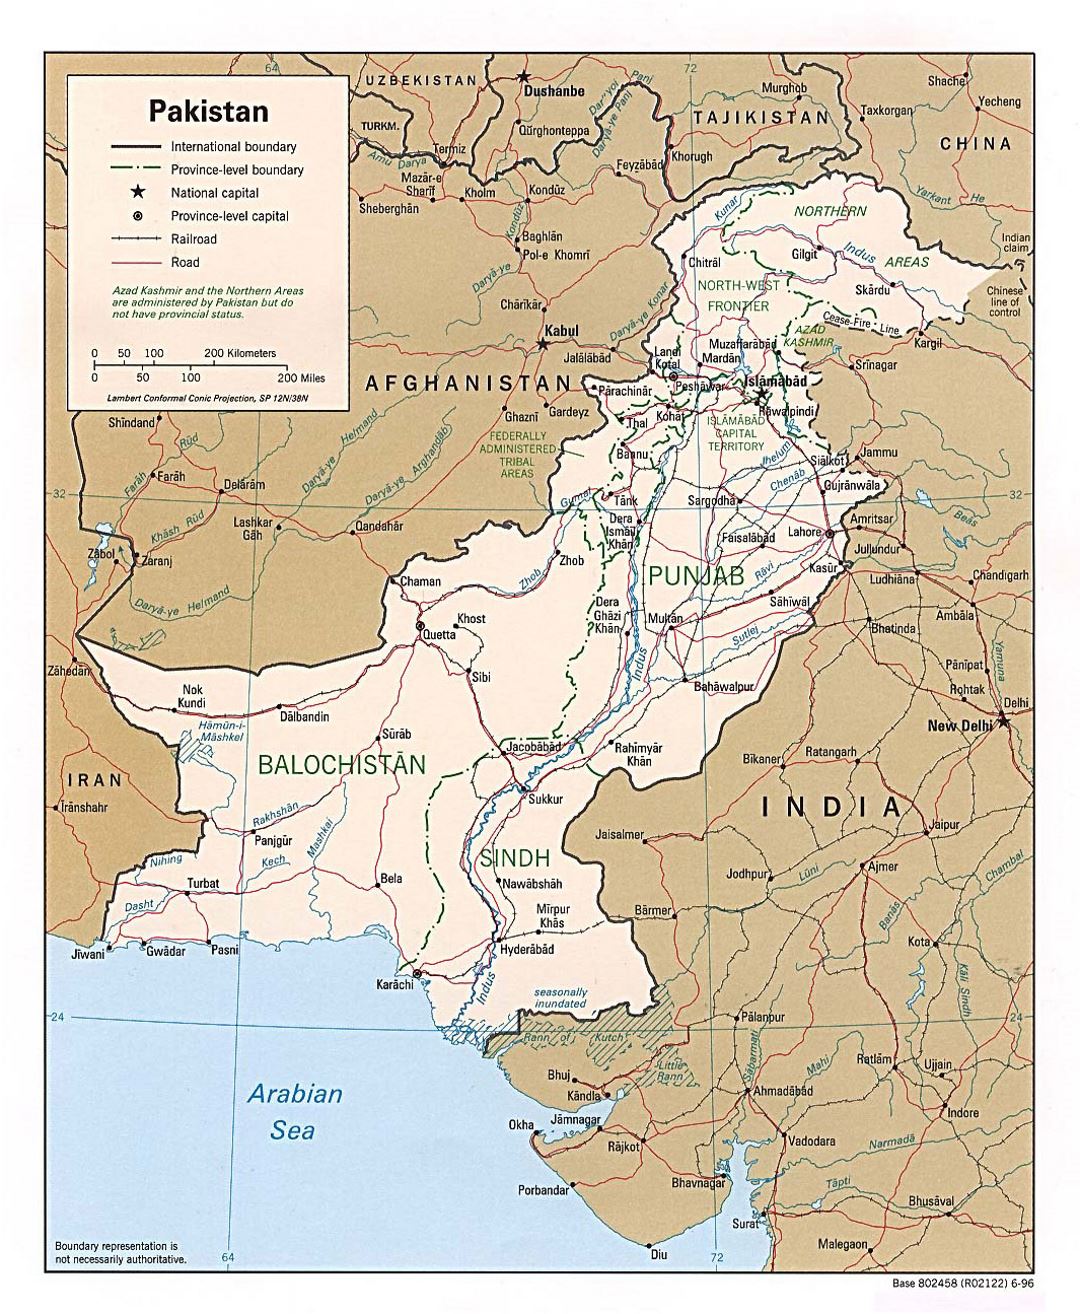 Детальная политическая и административная карта Пакистана с дорогами, железными дорогами и крупными городами - 1996